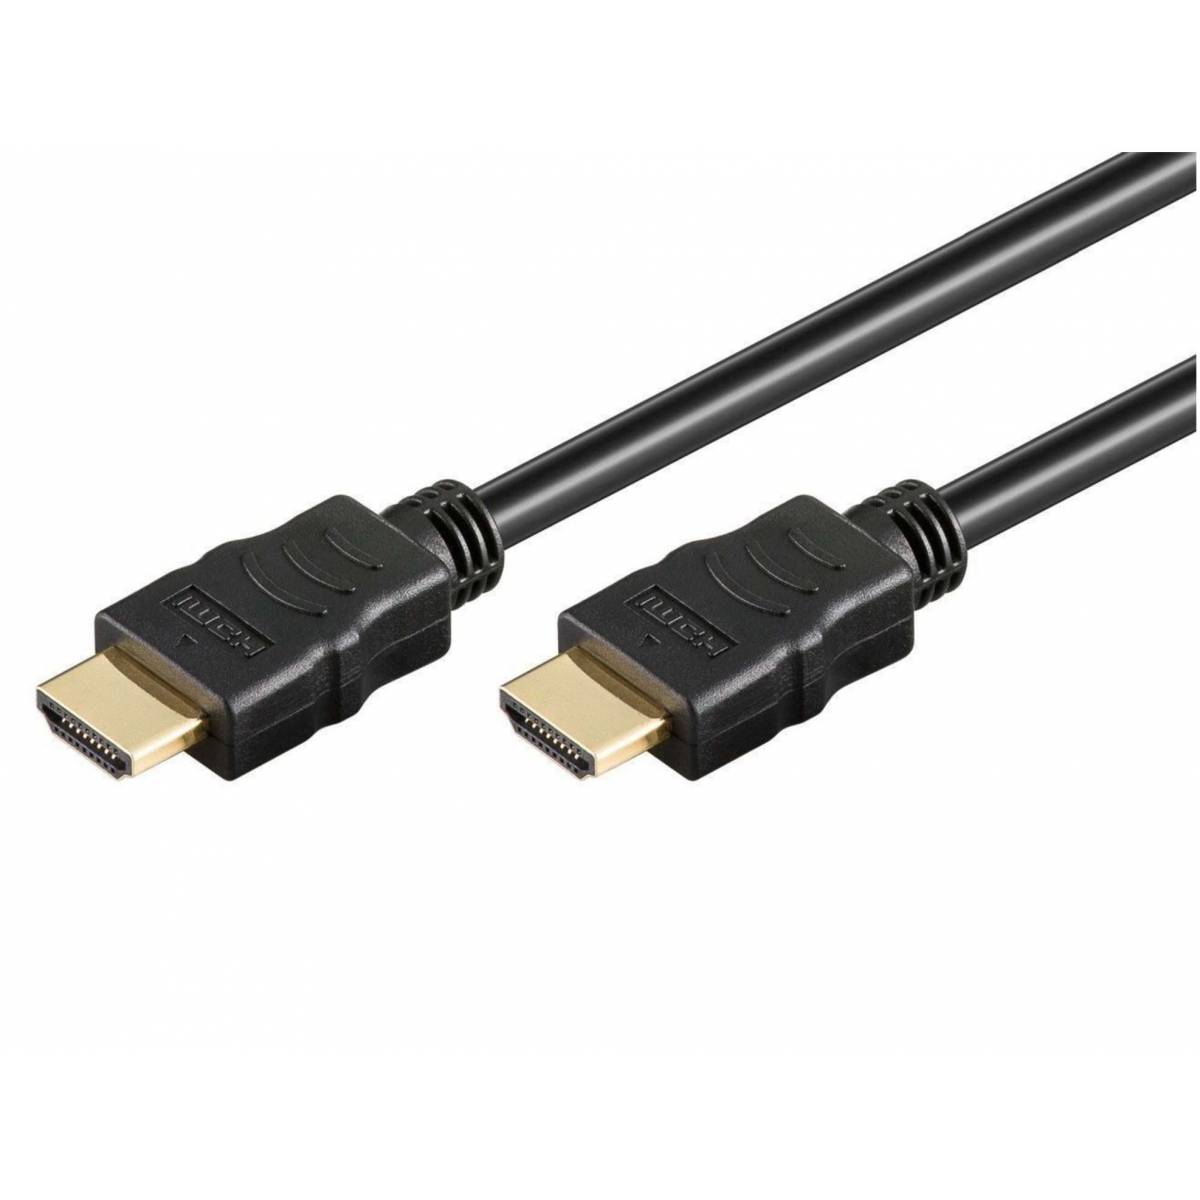 HDMI - Billig fragt levering